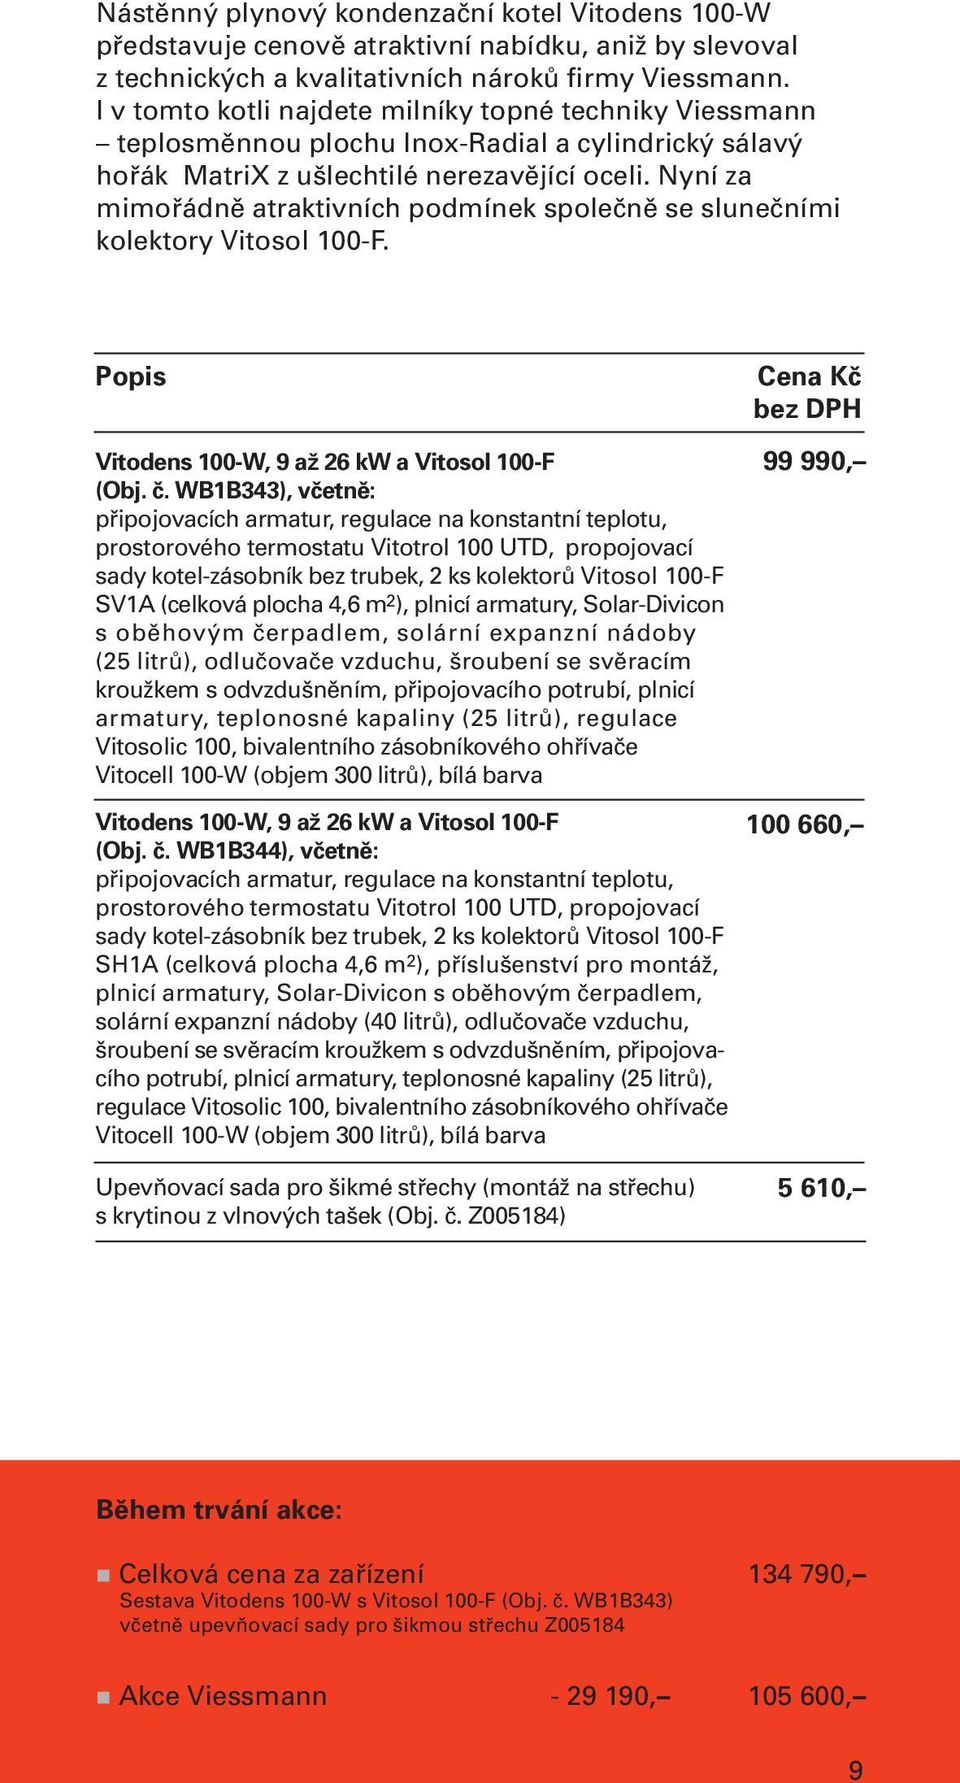 Nyní za mimořádně atraktivních podmínek společně se slunečními kolektory Vitosol 100-F. Popis Vitodens 100-W, 9 až 26 kw a Vitosol 100-F (Obj. č.